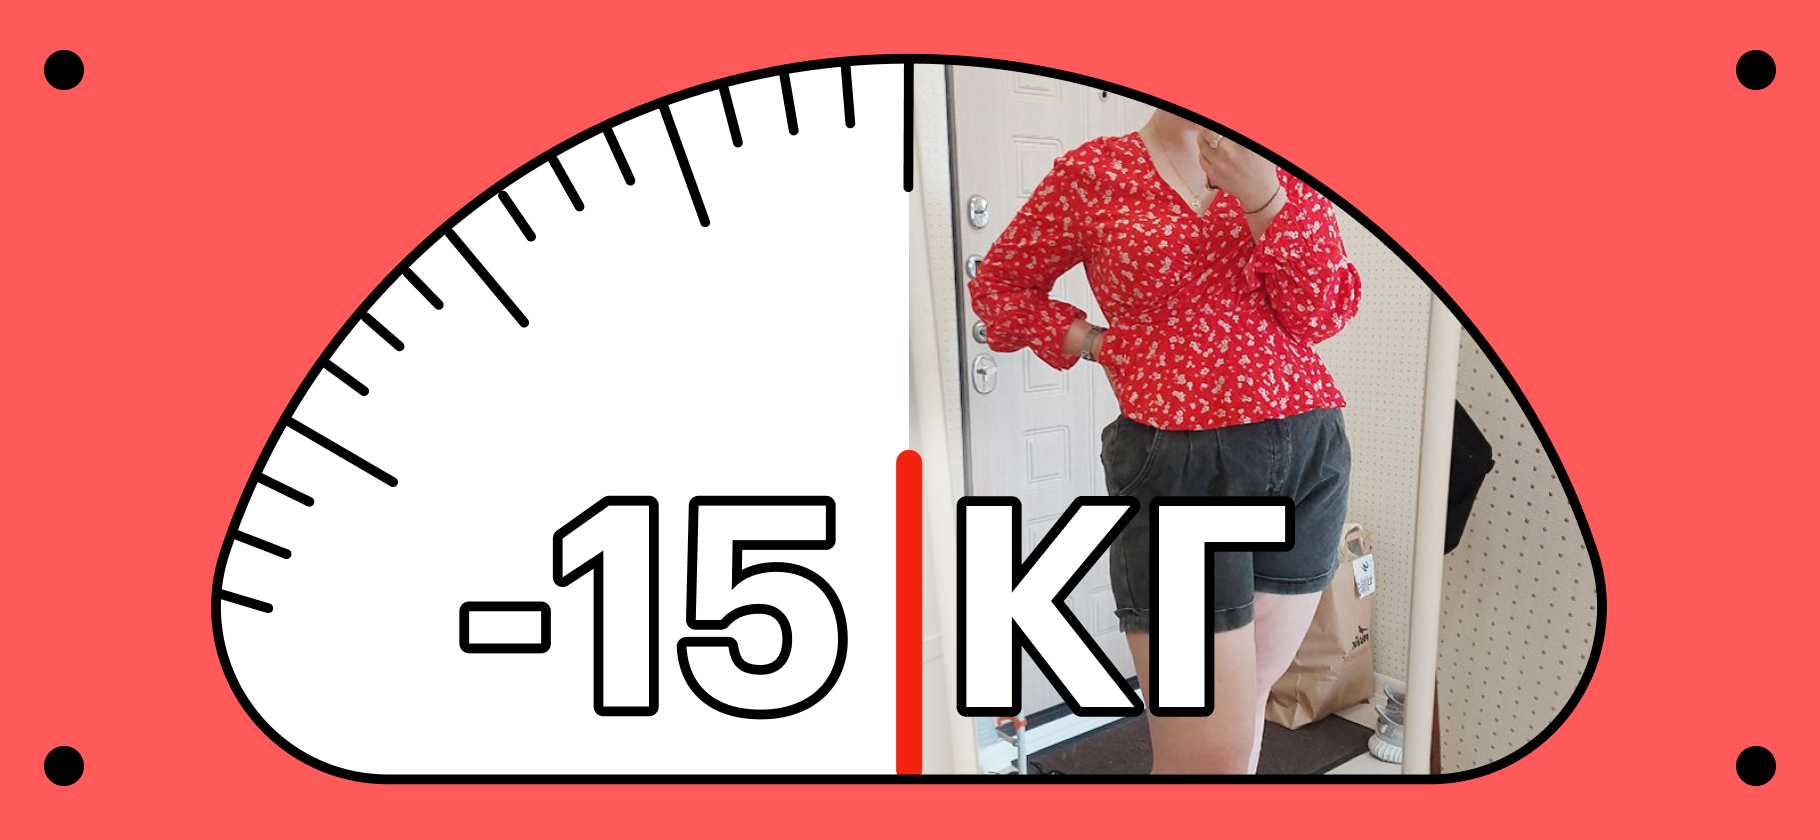 Как за 20 дней похудеть на 15 килограммов без сильных ограничений